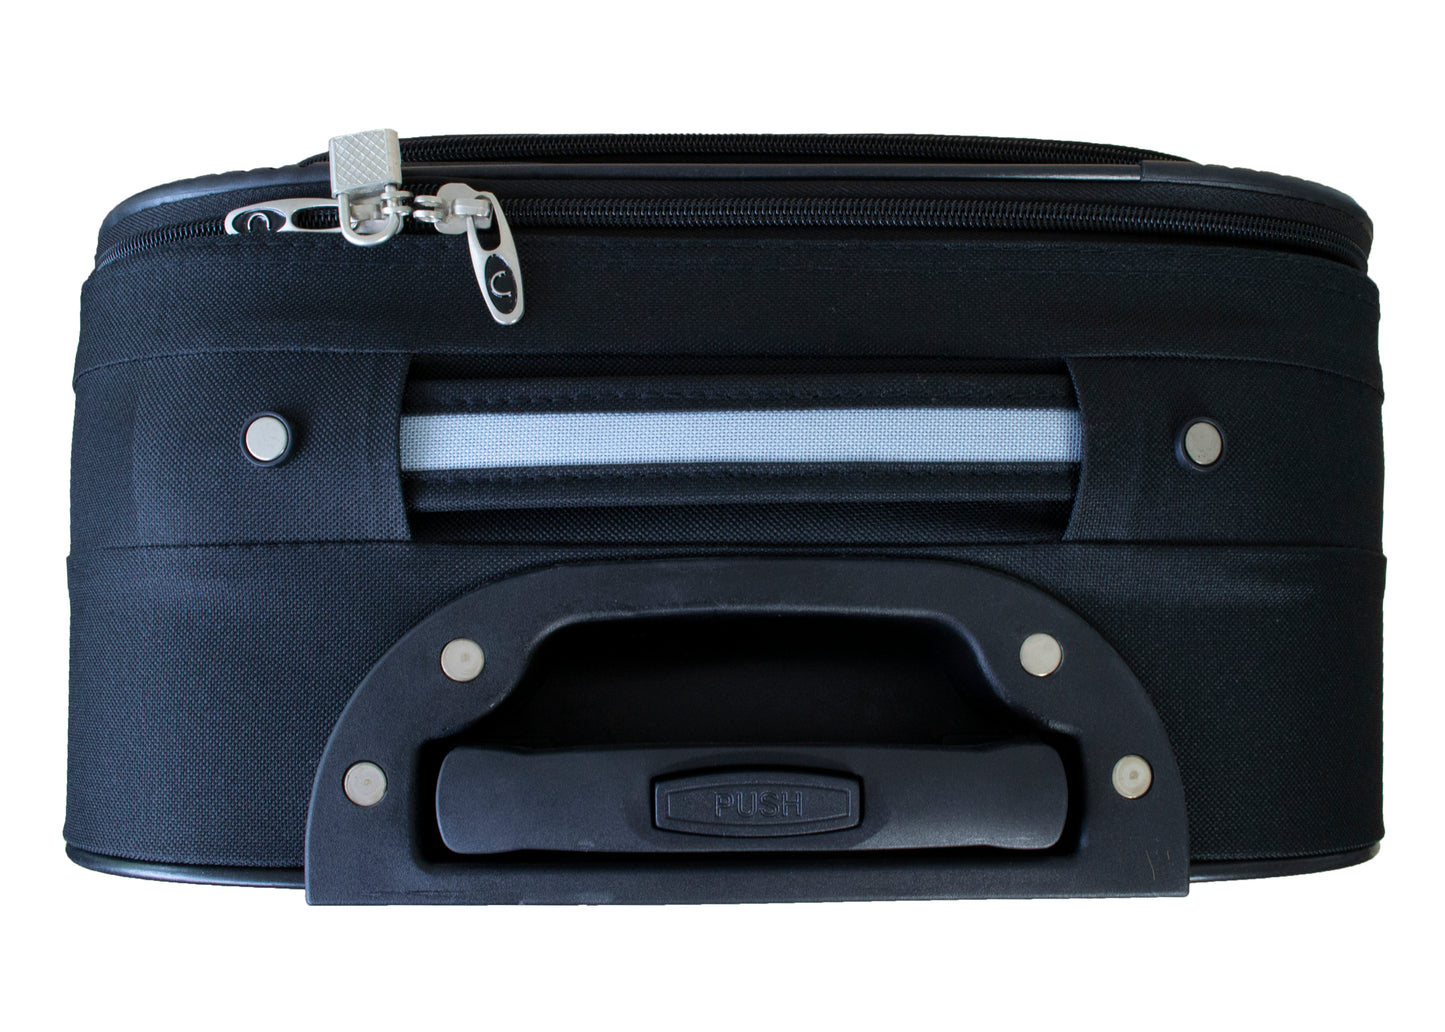 2 Wheels Soft Case Luggage Black-Grey